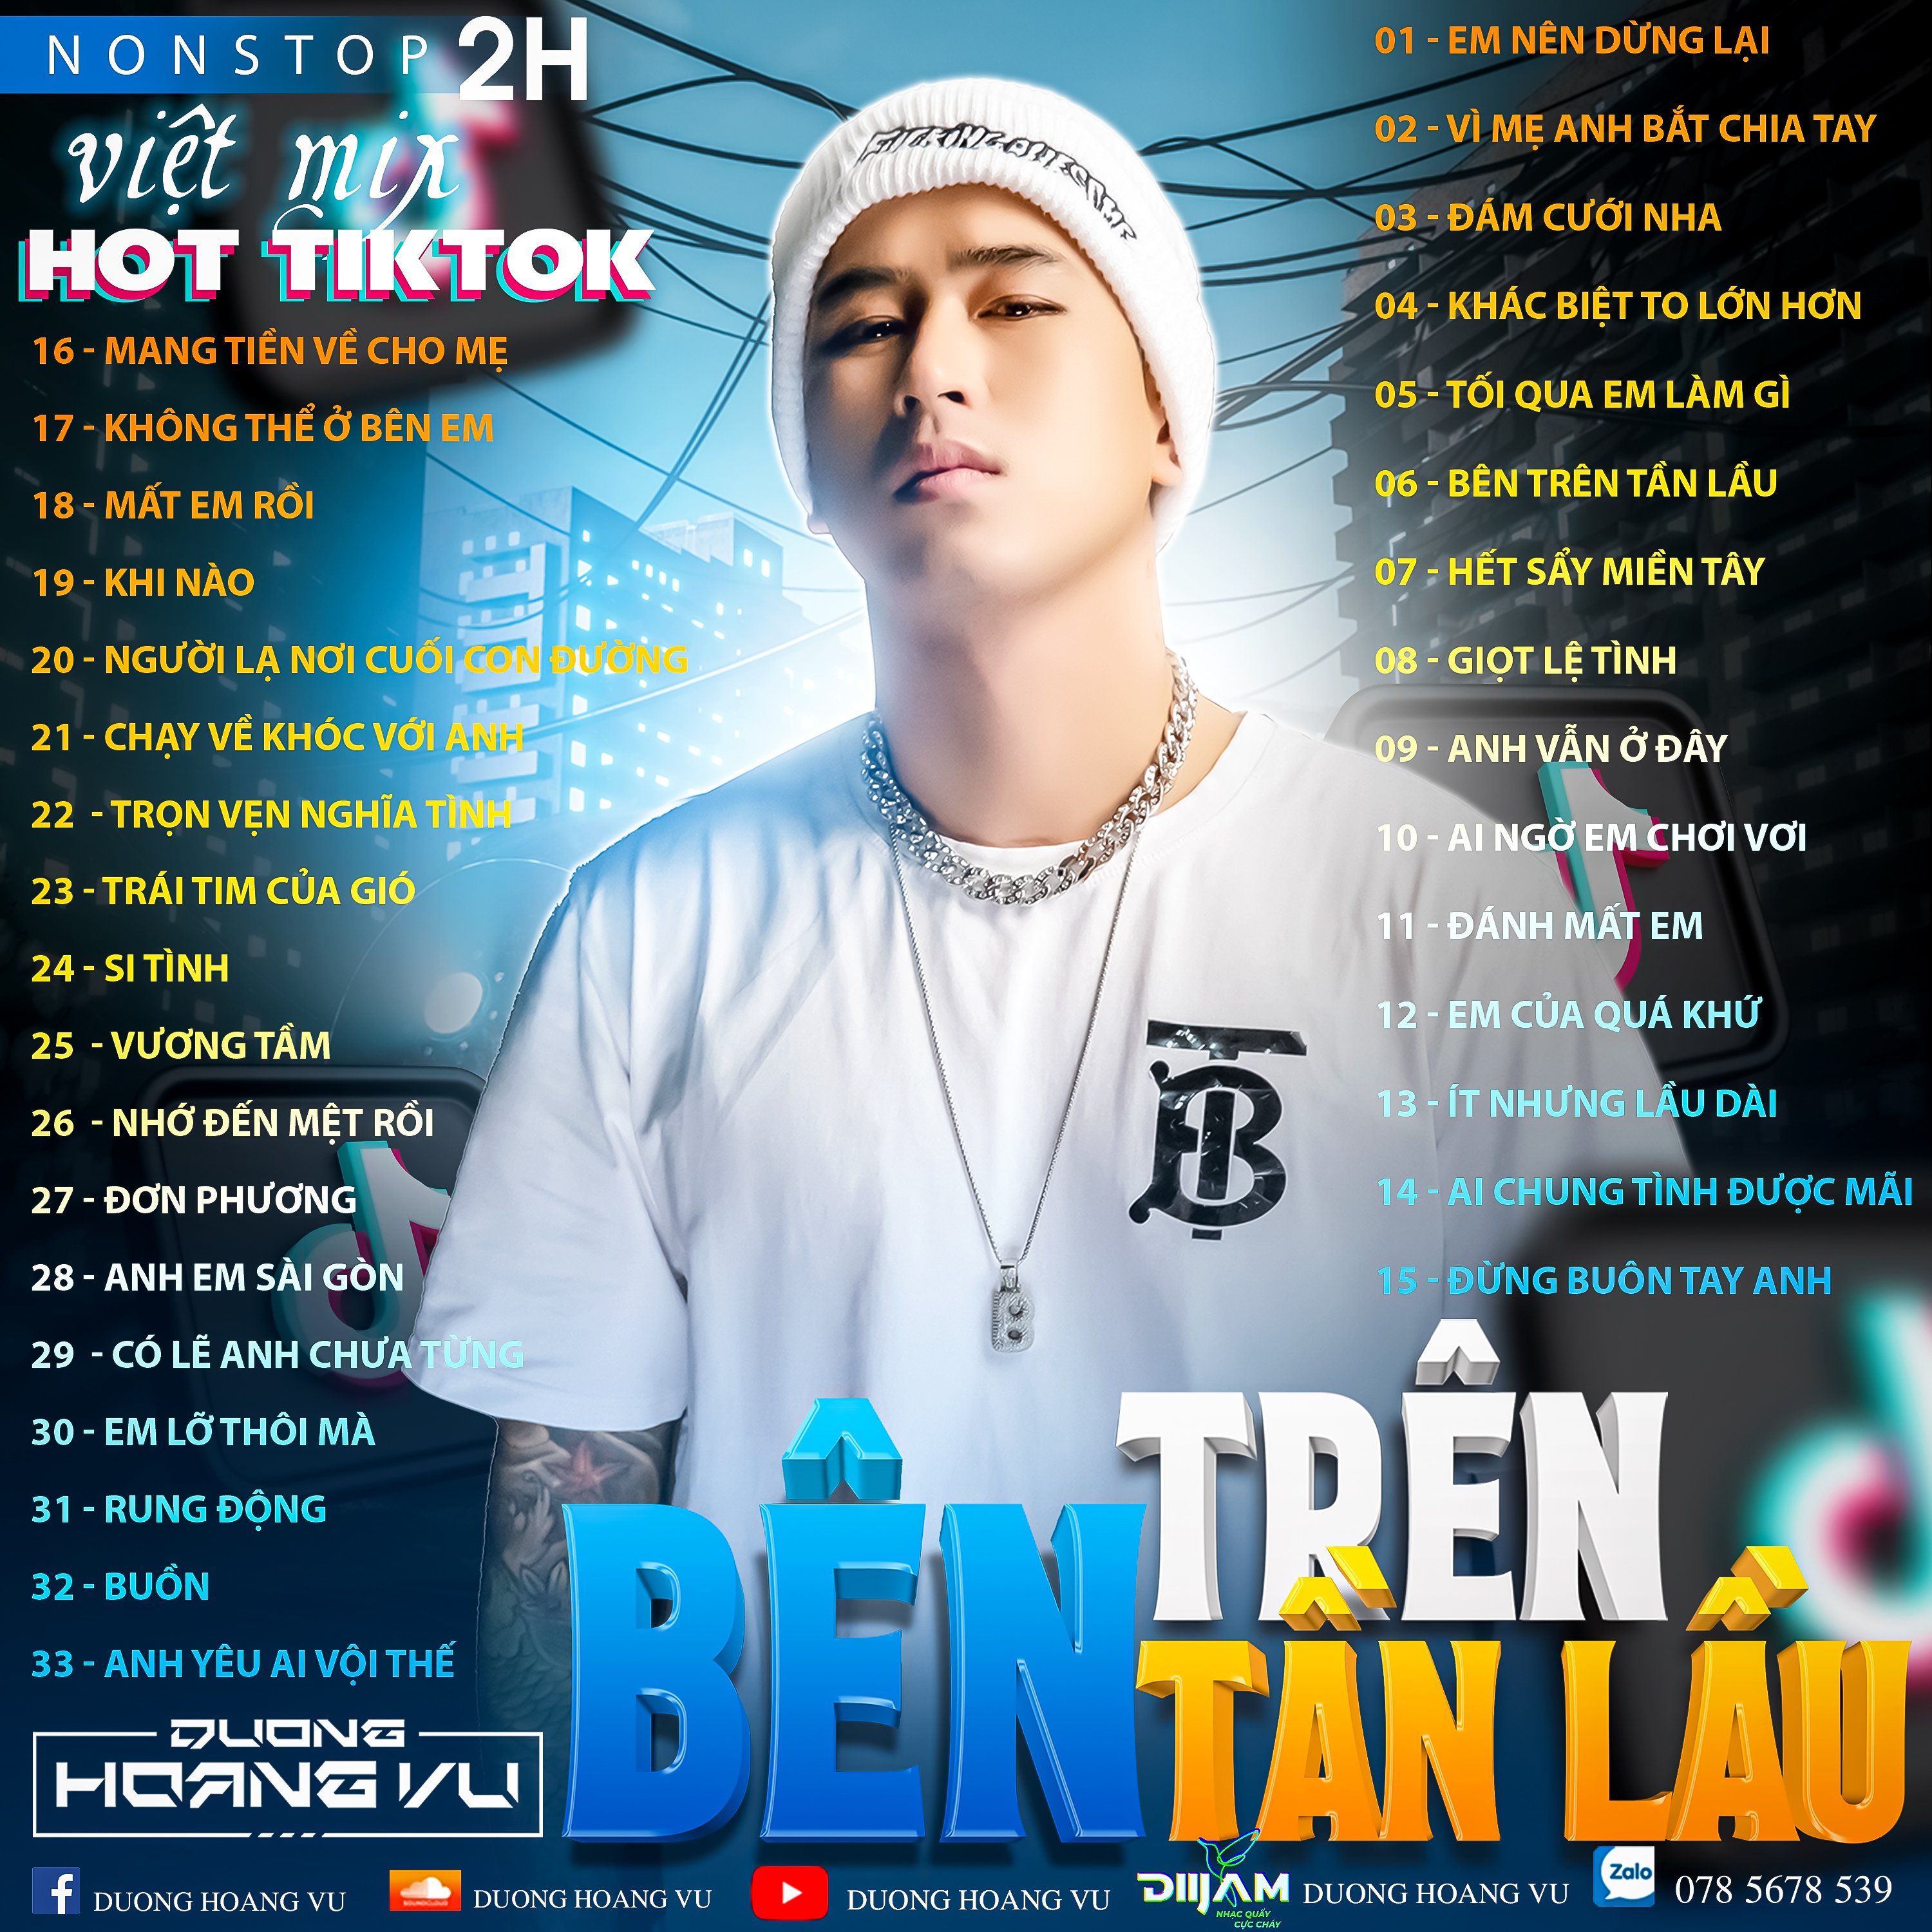 İndirmek (Demo ) Nst Việt Mix Hot tiktok 2h - 2022 - DJ Dương Hoàng Vũ Mix Mua Full IB Zalo 078.5678.539